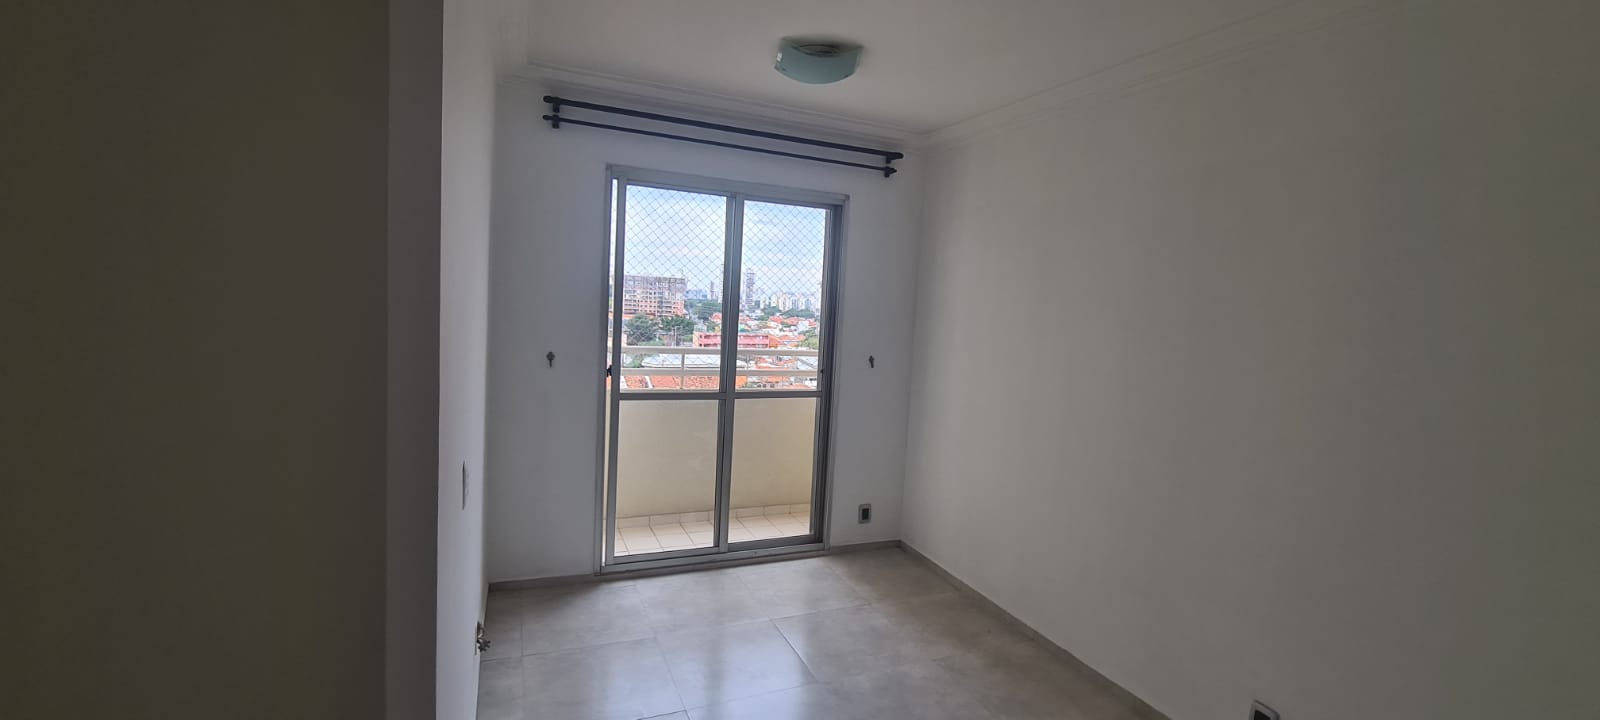 Apartamento - Locação, Carandiru, São Paulo, SP